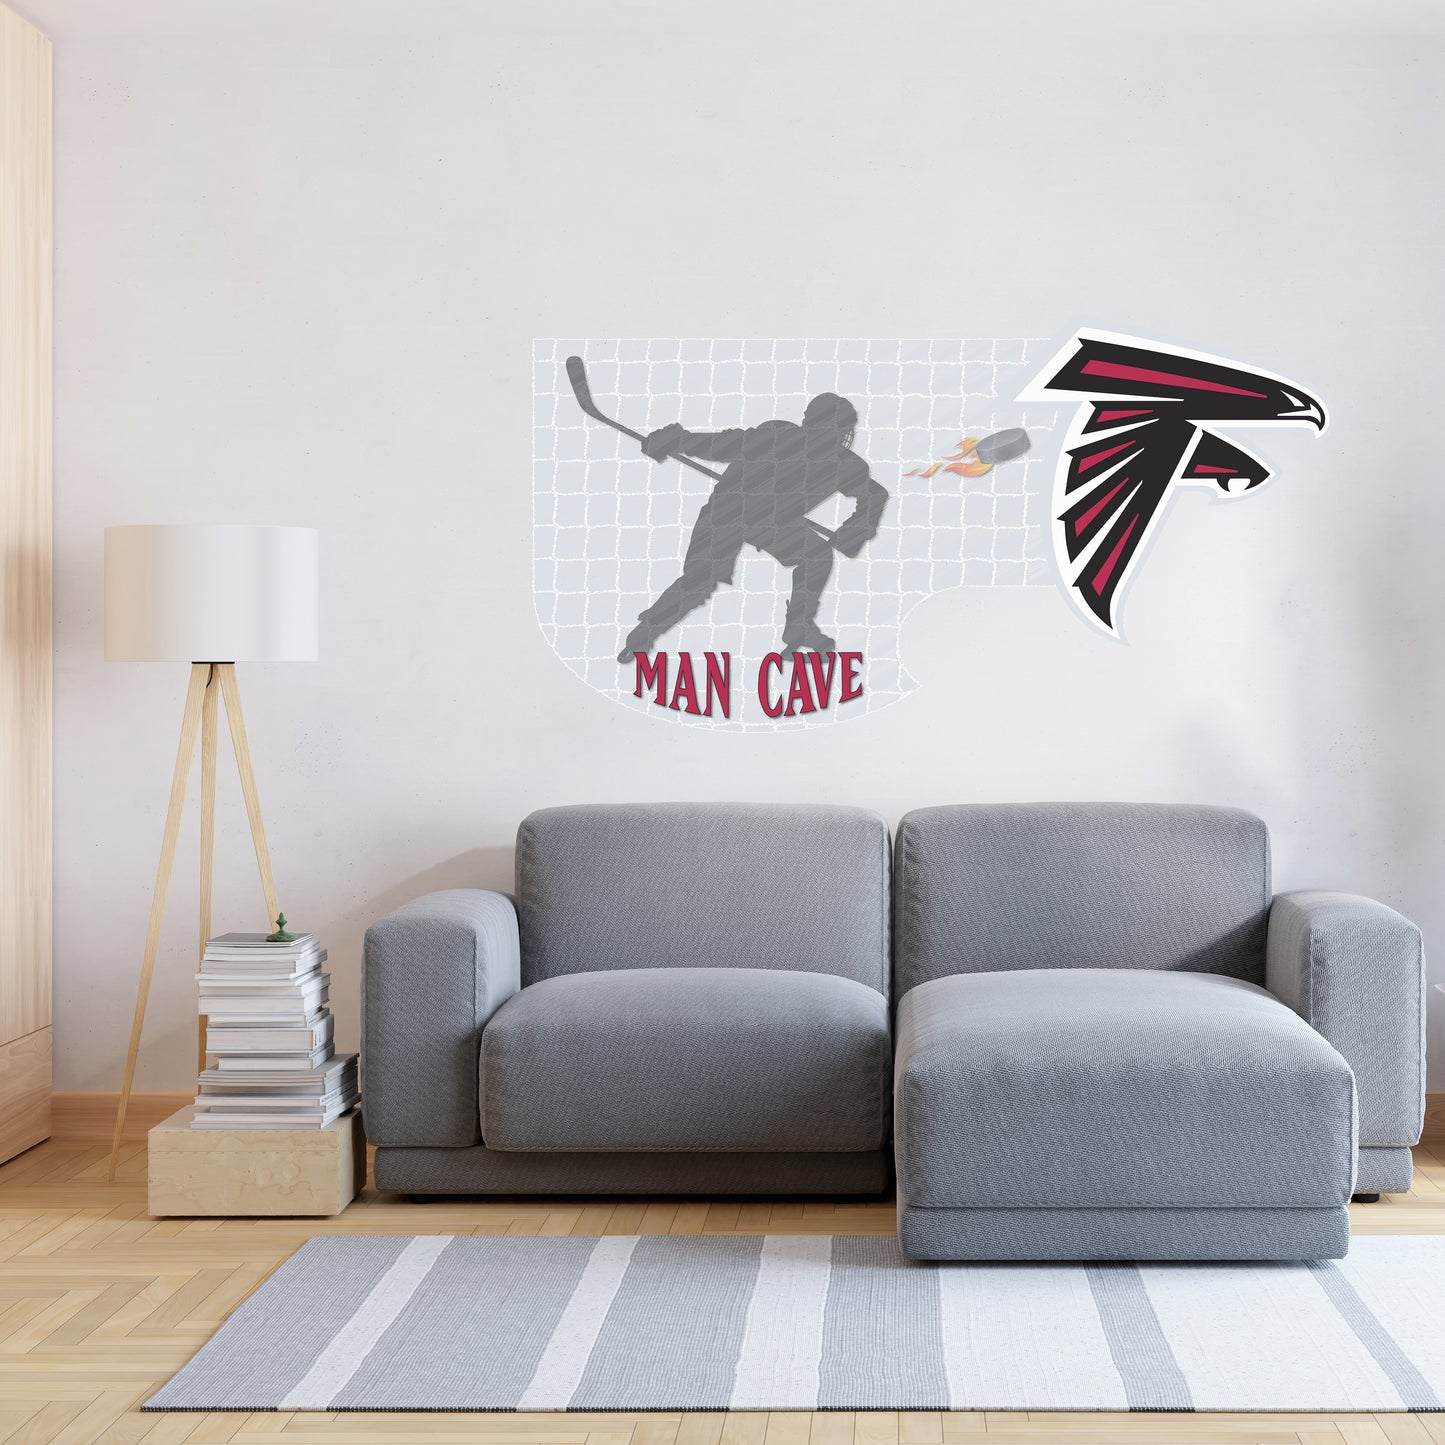 Atlanta Falcons Man Cave Wall Decor Art- 3D Stickers Vinyl - 2 - MC056